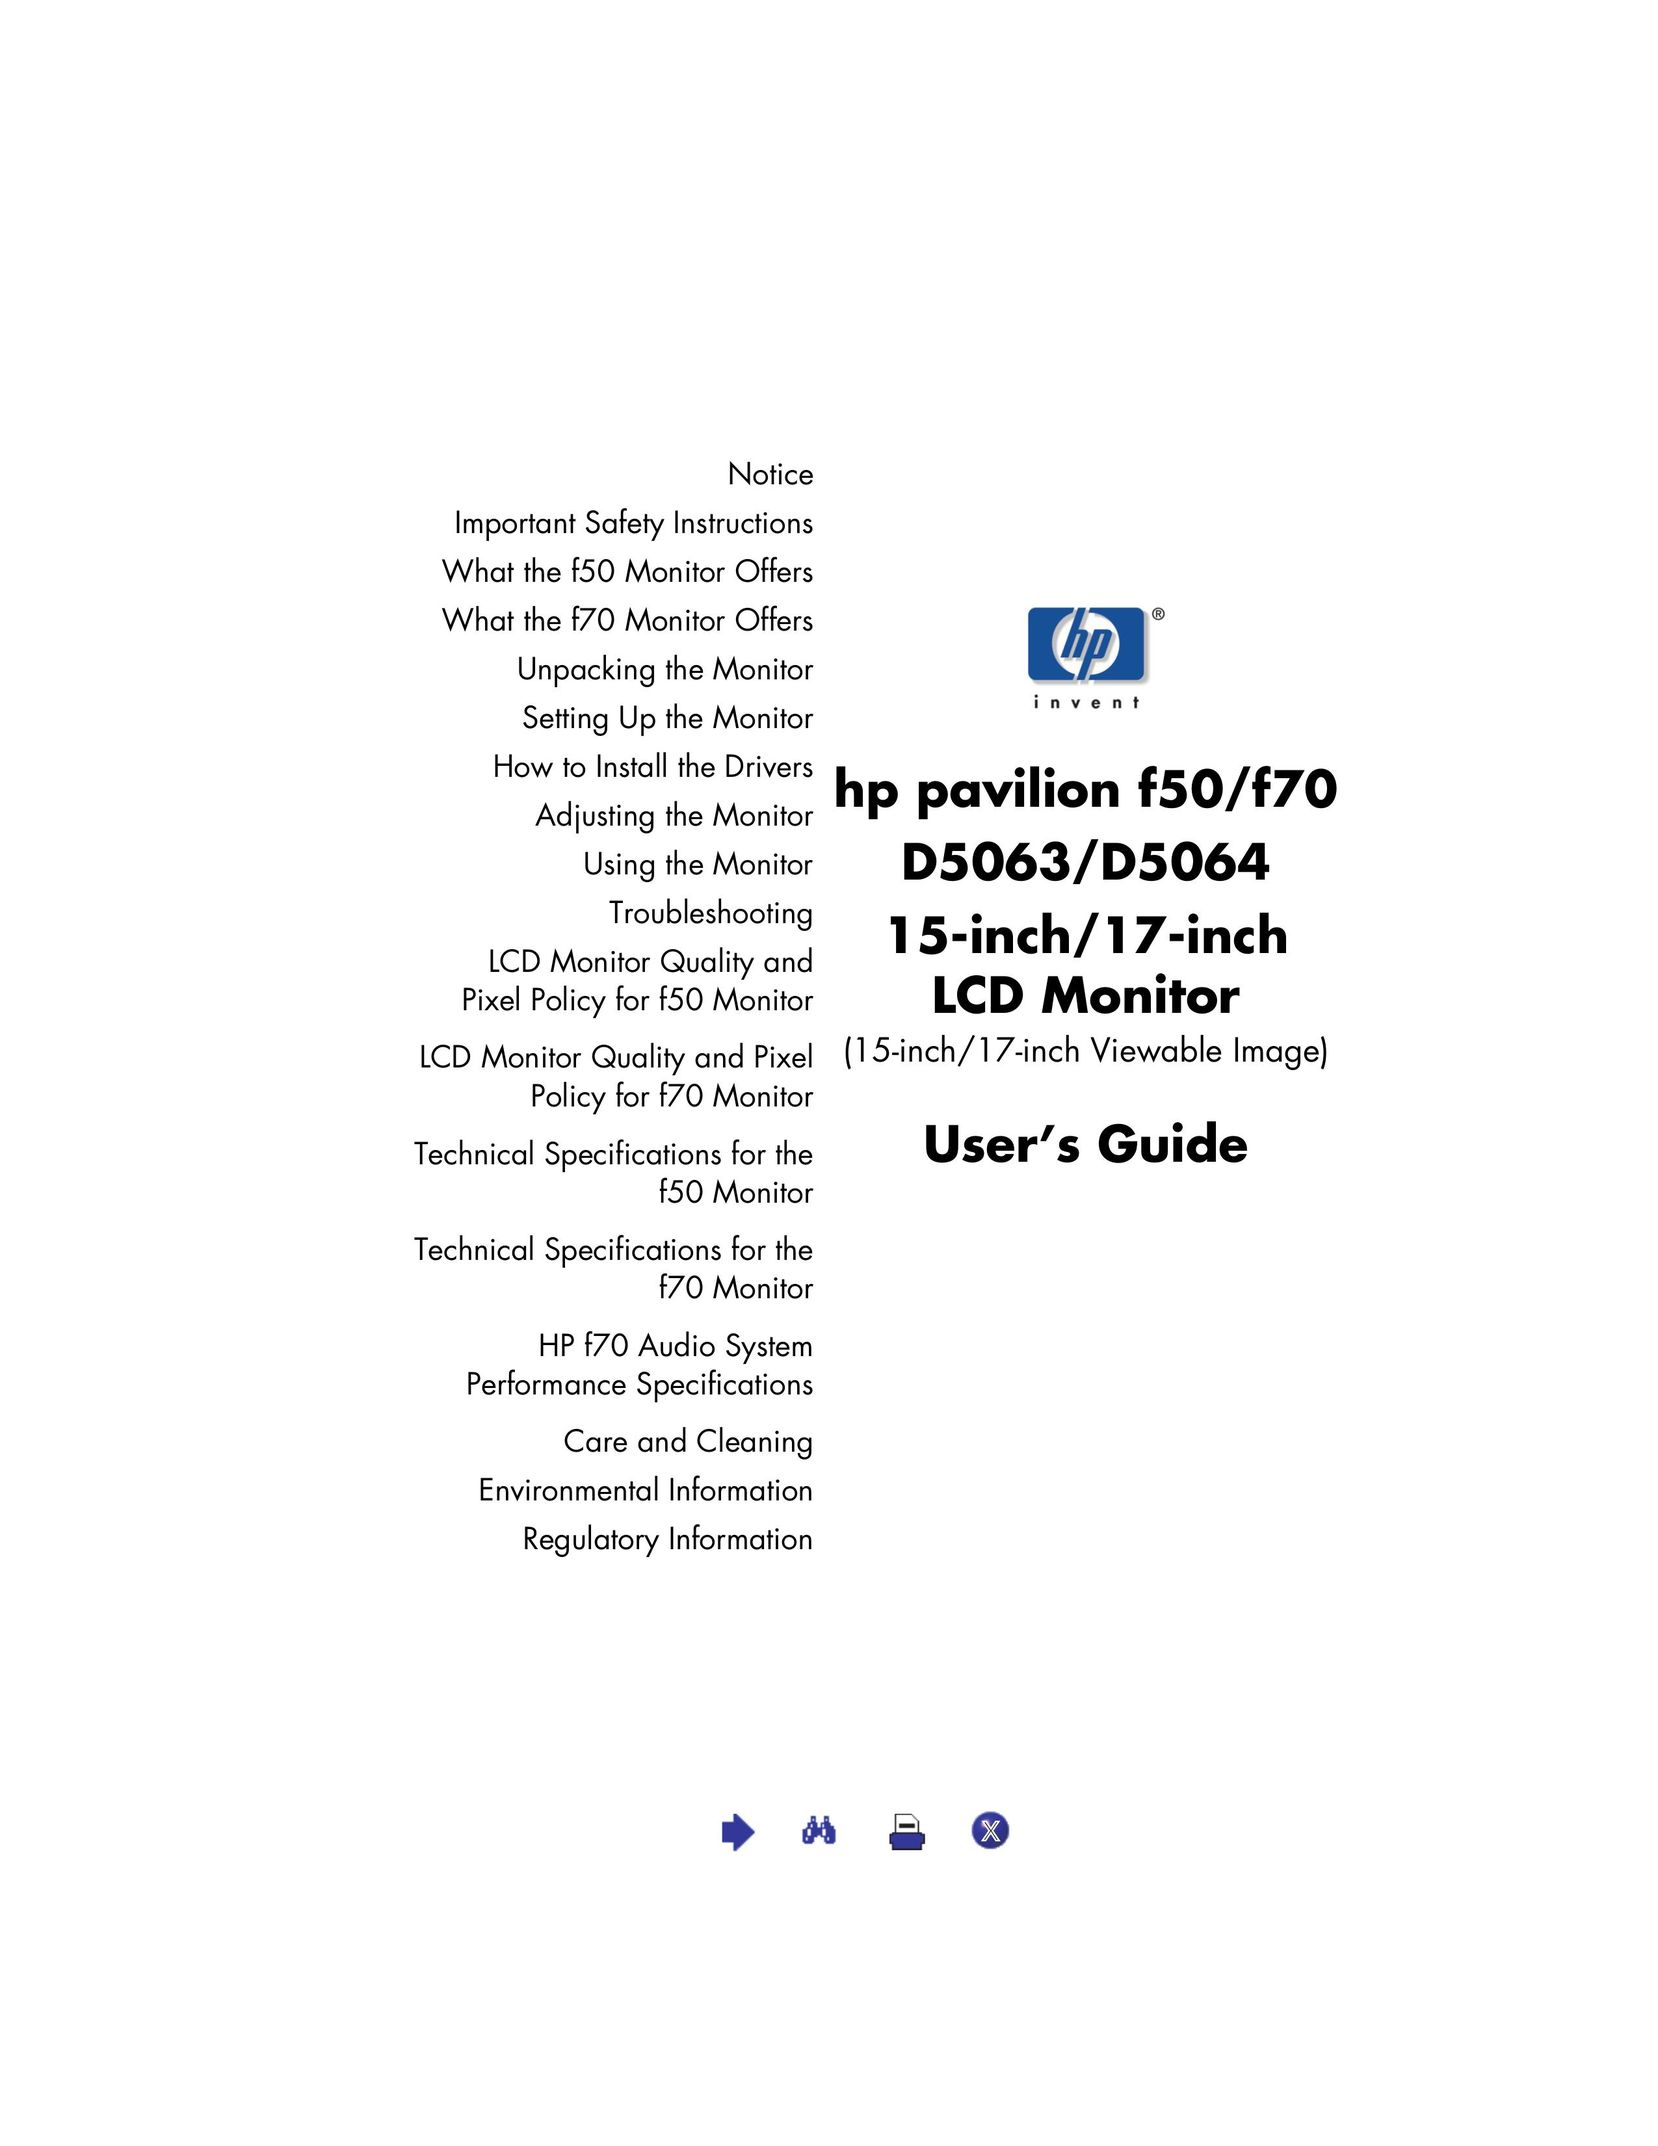 HP (Hewlett-Packard) D5064 Car Video System User Manual